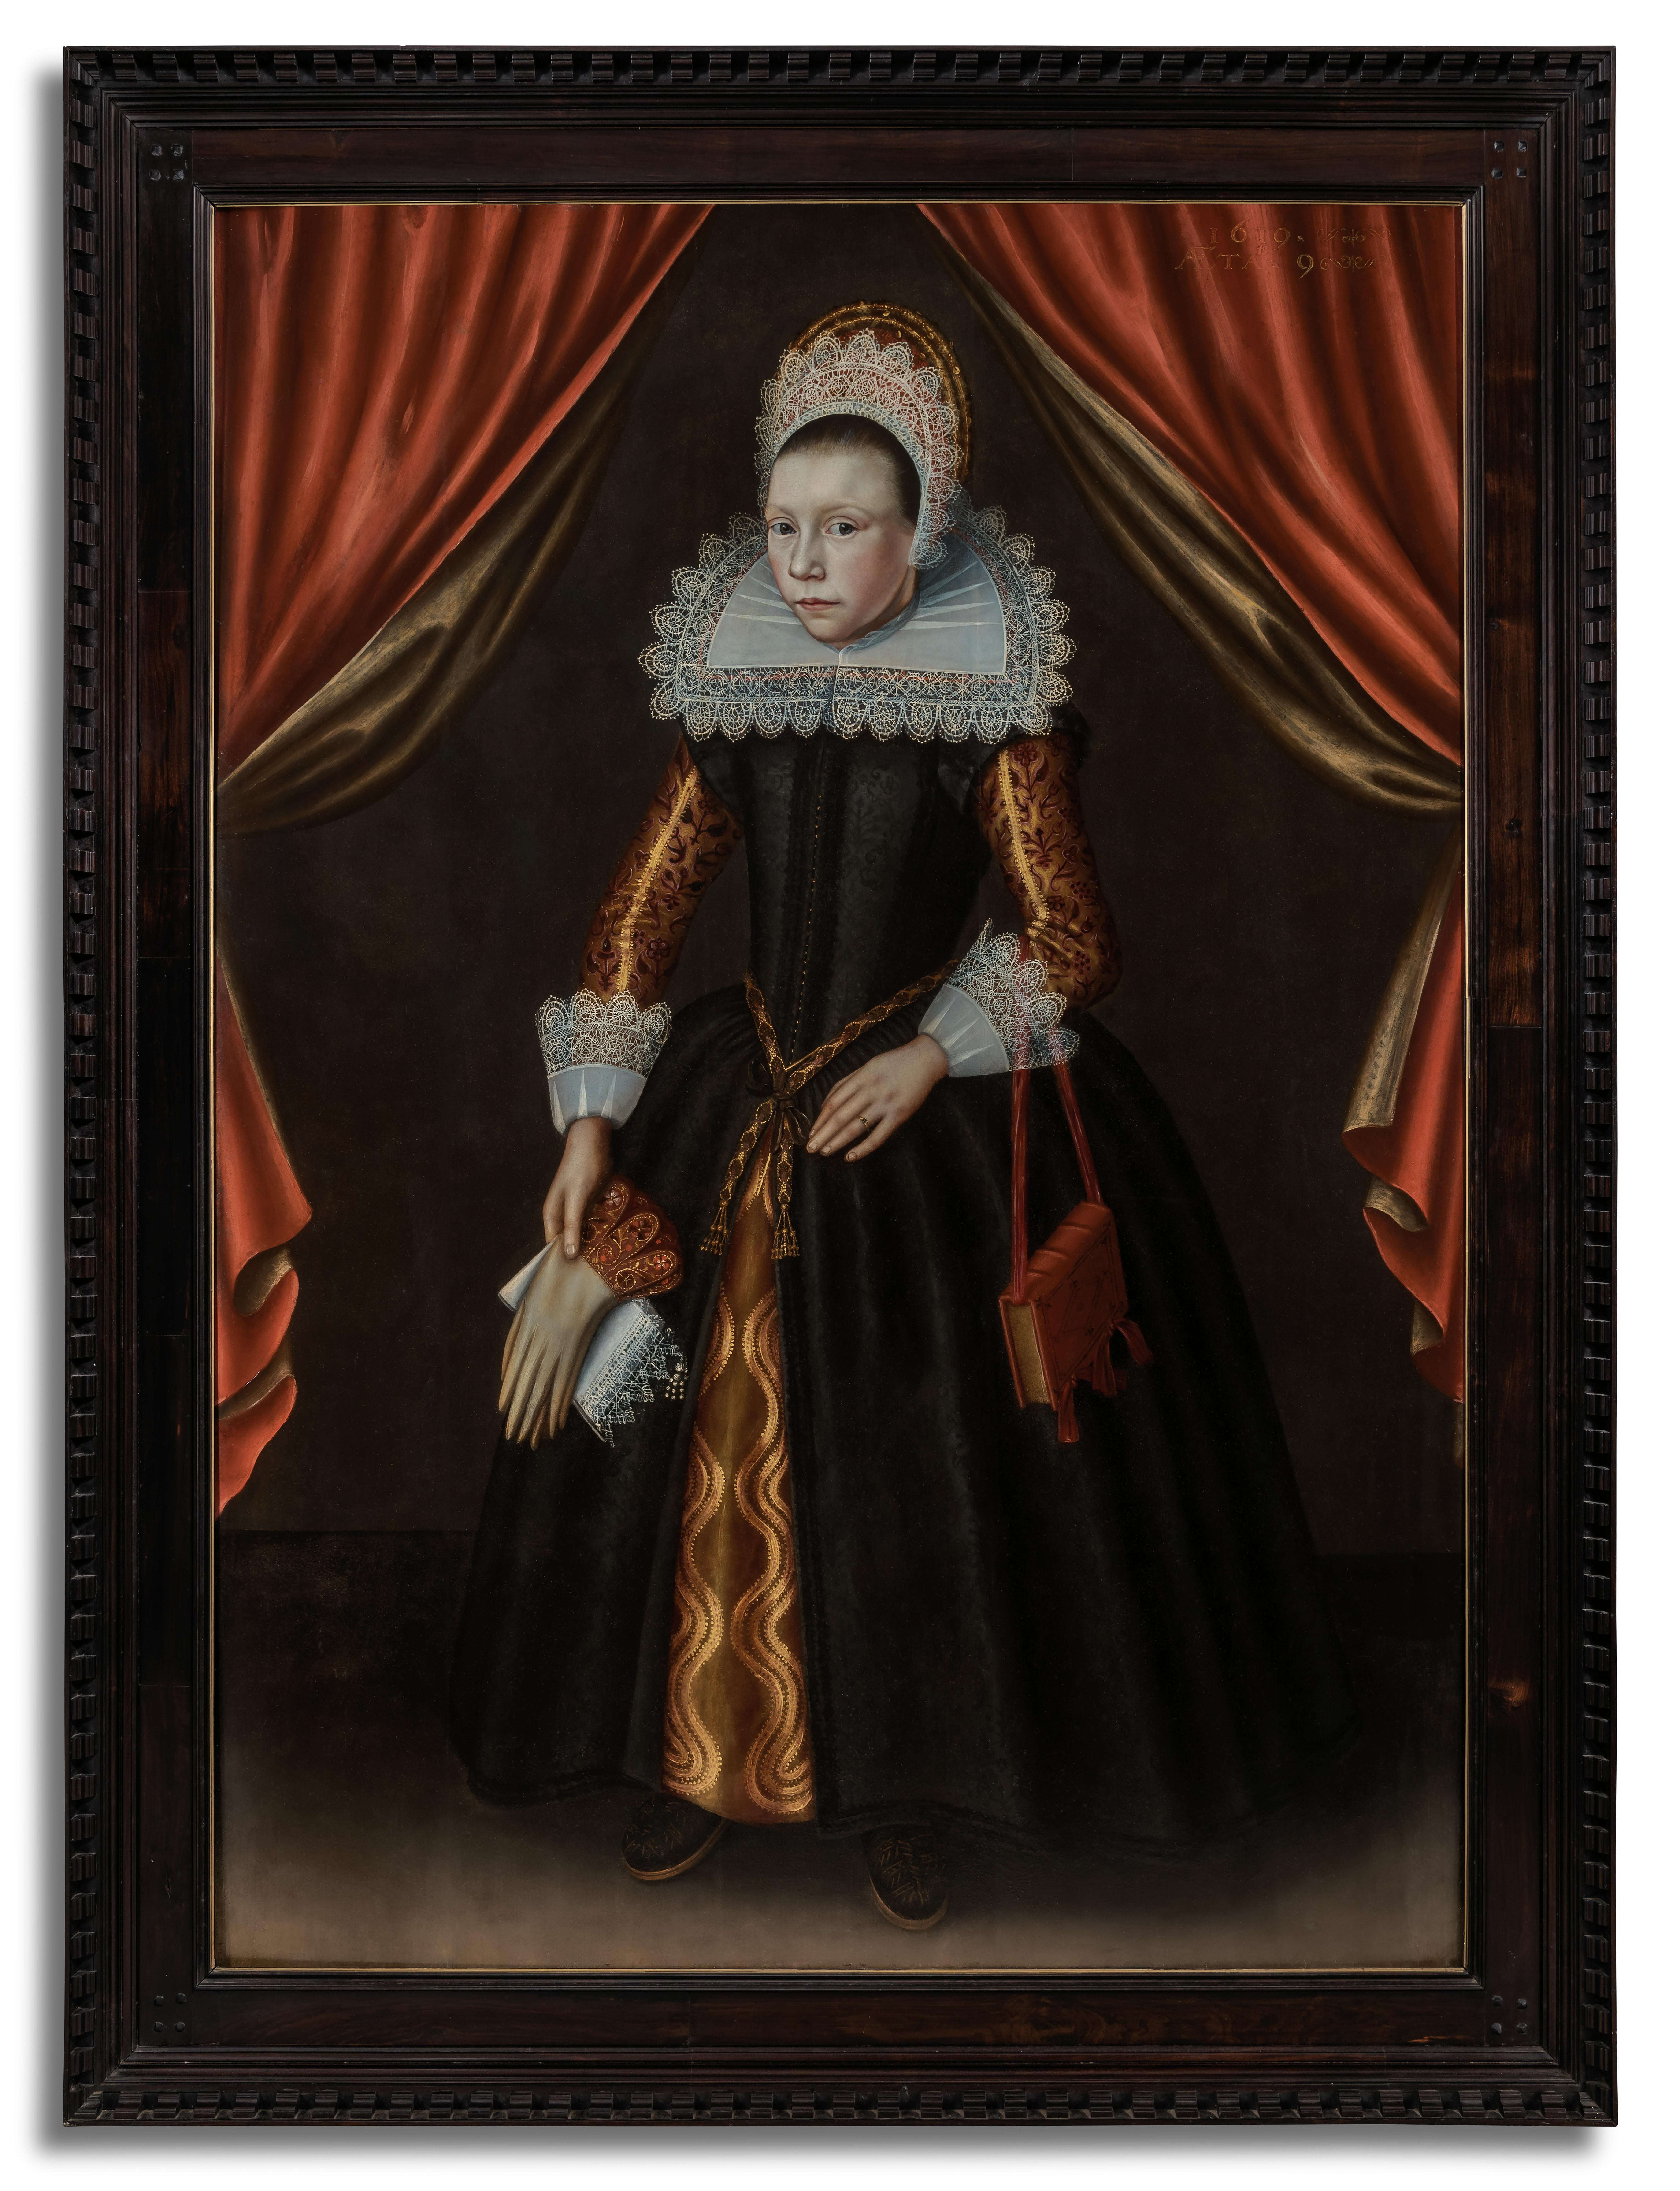 Niederländisches Porträt eines alten Meisters im Alter von 9 Jahren in schwarzem Kleid und Spitzenadel, datiert 1619